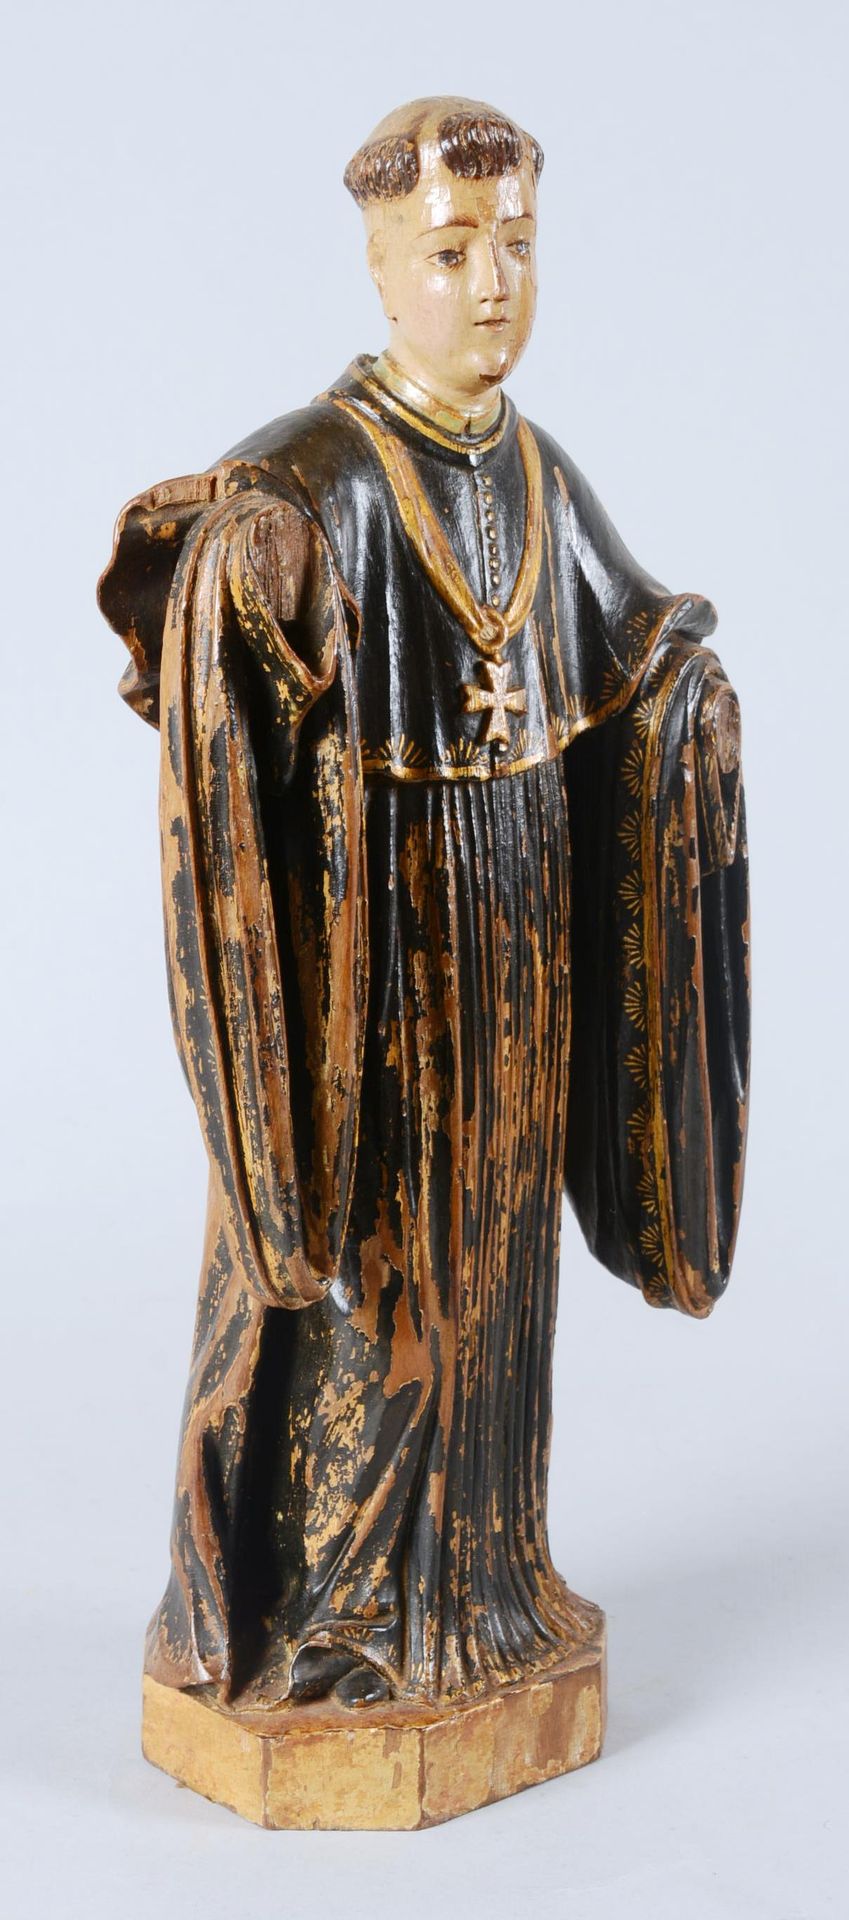 Sculpture en bois peint d'un Saint Abbé. 圣人方丈的彩绘木雕。

18世纪的作品。遗漏和铜锈修复。

高度：34厘米